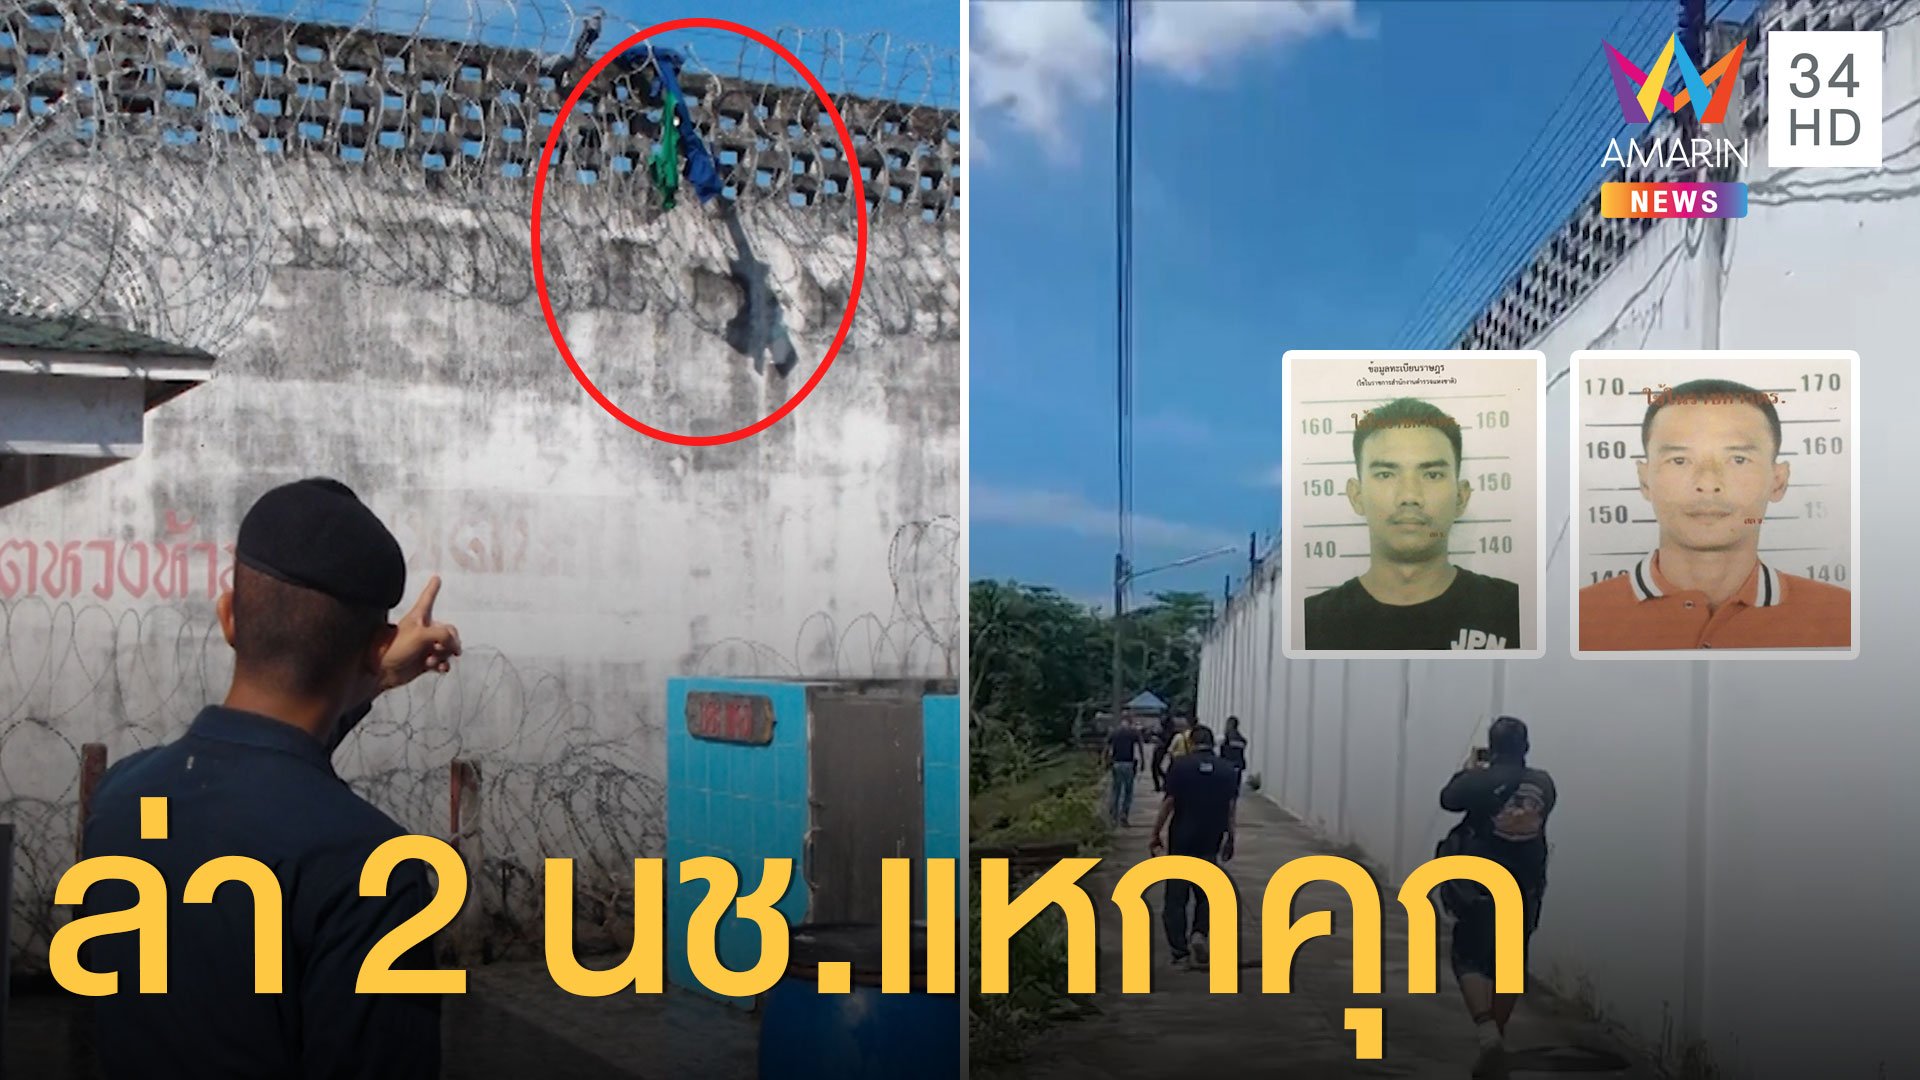 ตามล่า 2 นักโทษแหกคุก หัวหมอใช้ผ้าห่มปีนข้ามกำแพง | ข่าวเที่ยงอมรินทร์ | 30 ก.ย. 63 | AMARIN TVHD34